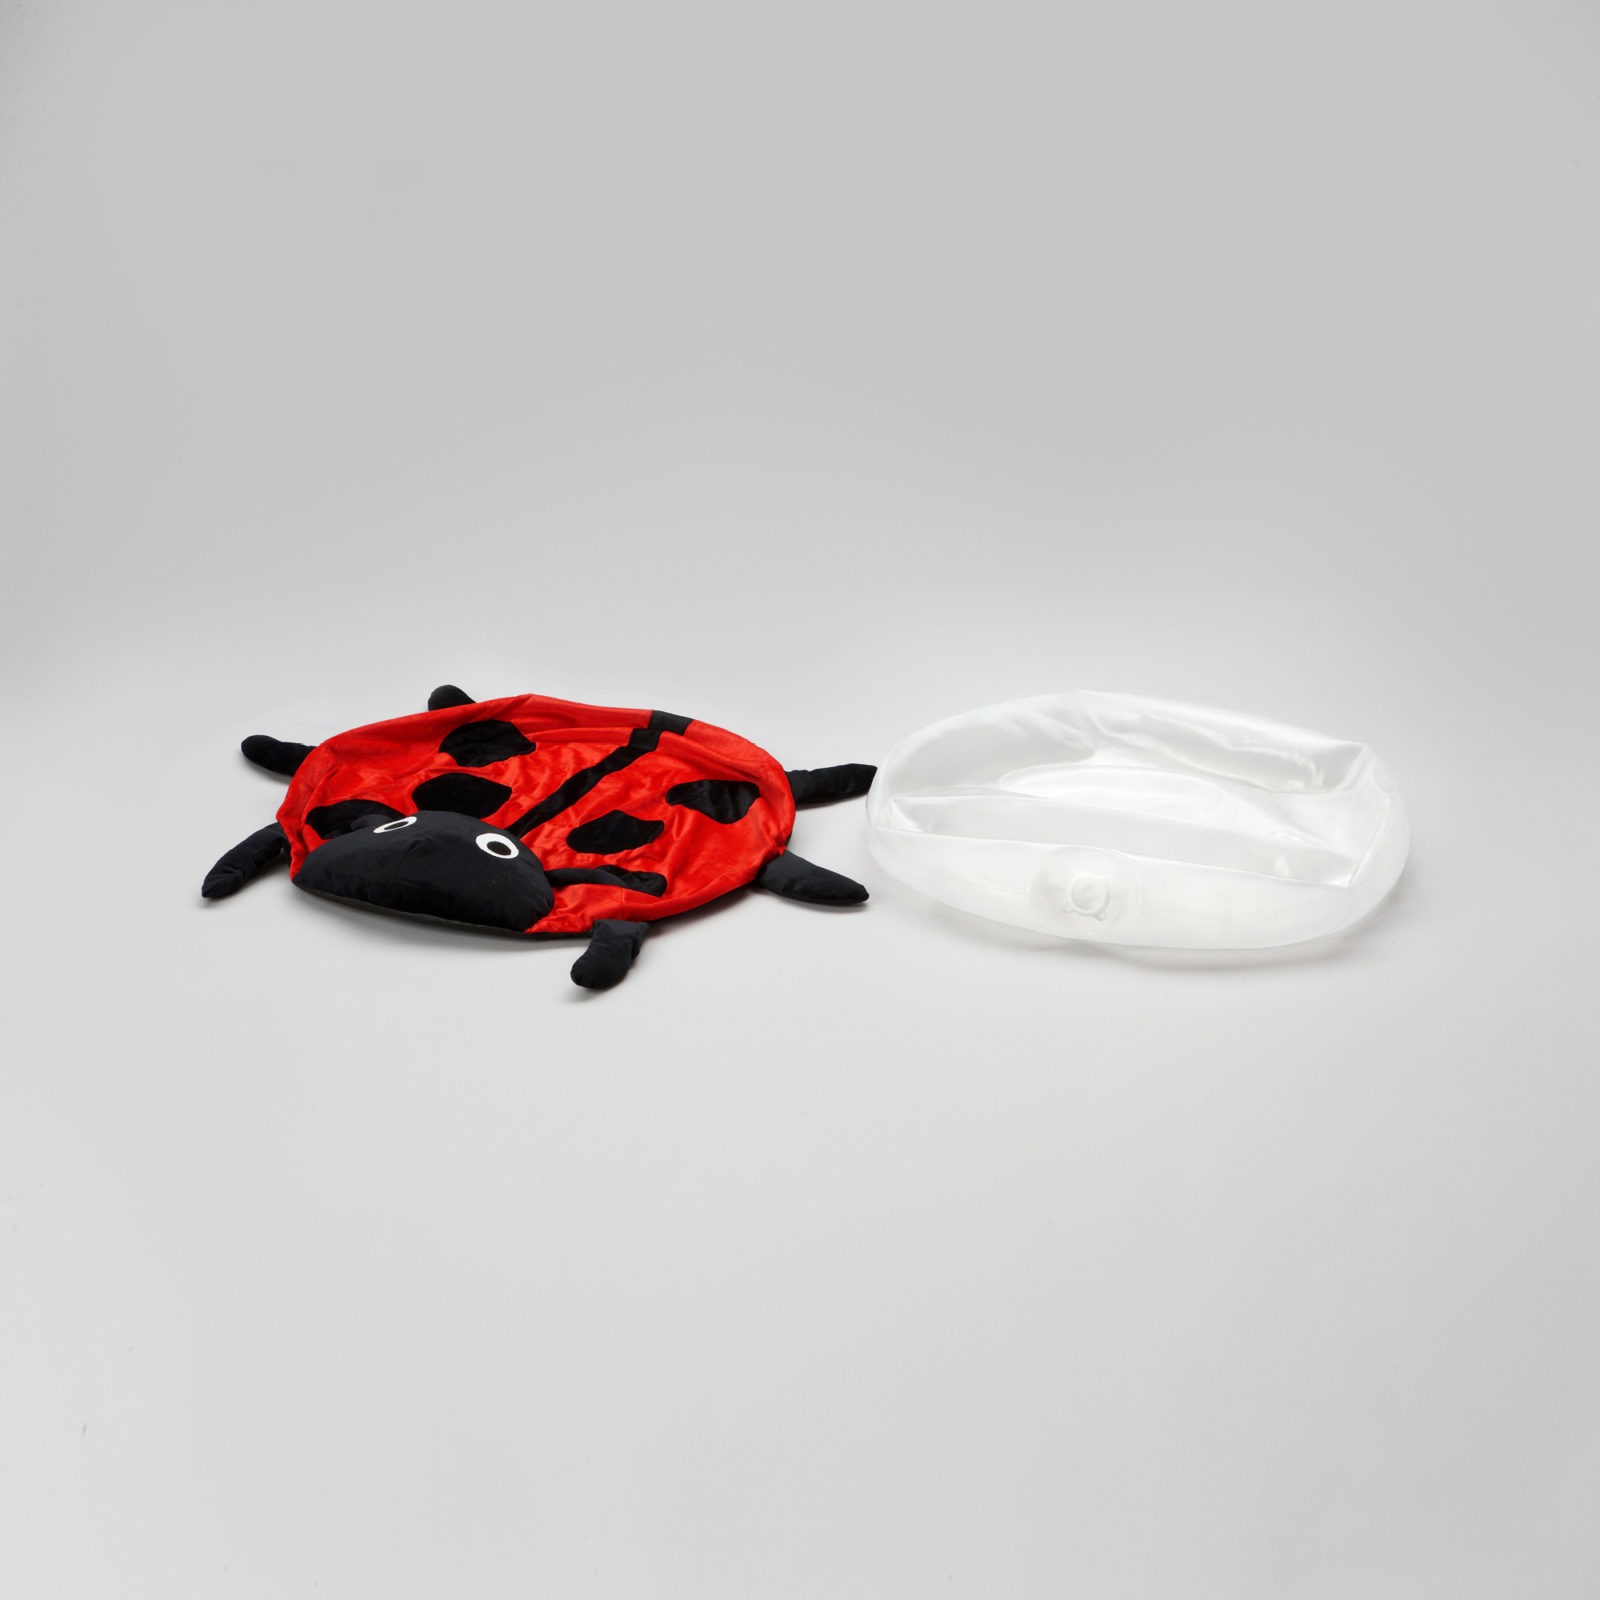 Kissenhülle in Form eines Marienkäfers liegt neben einem Plastikkissen, aus dem die Luft abgelassen wurde.